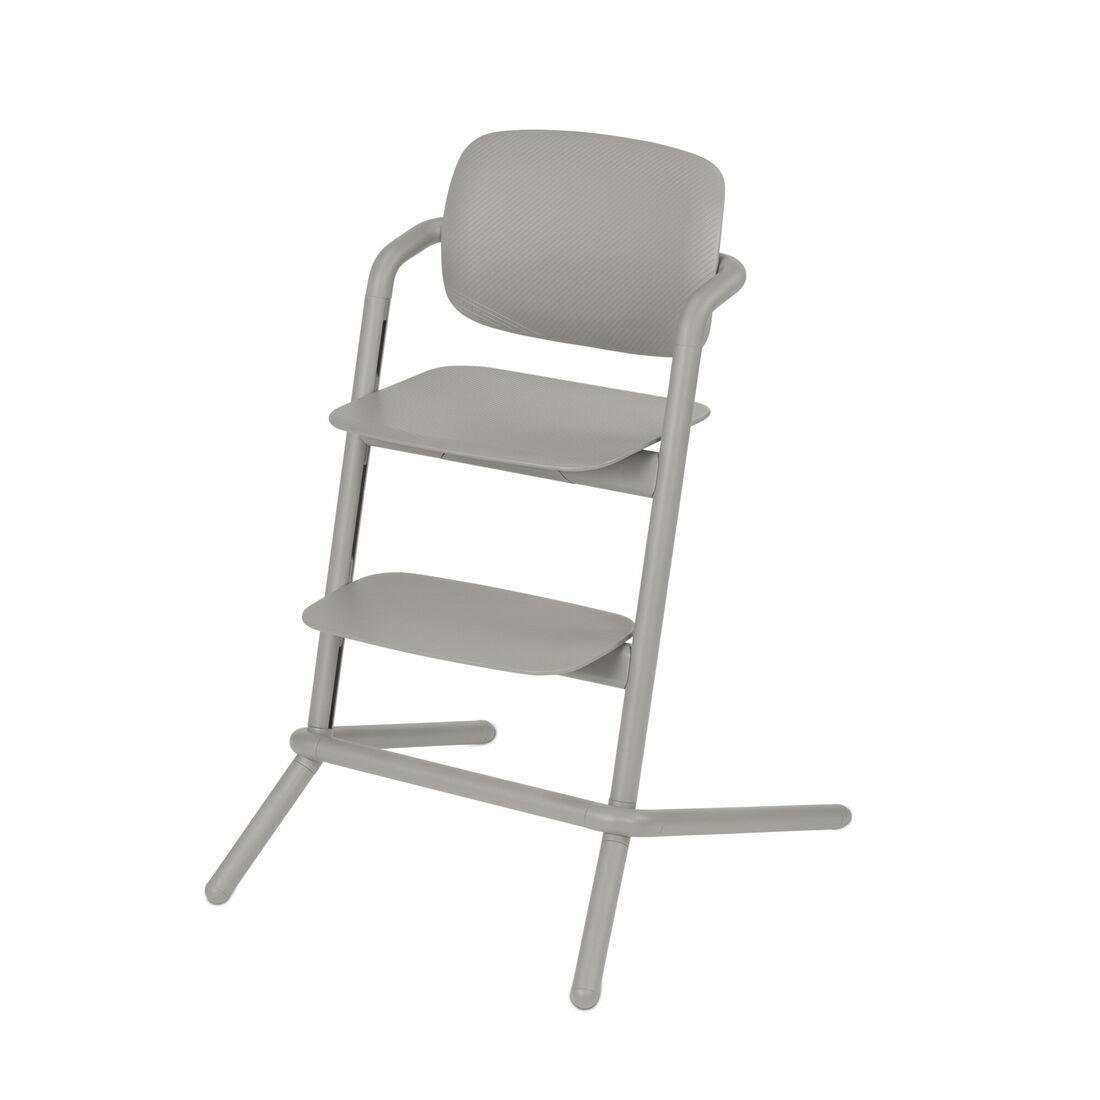 כיסא לתינוק LEMO CHAIR - כיסא לכל החיים - Cybexonline